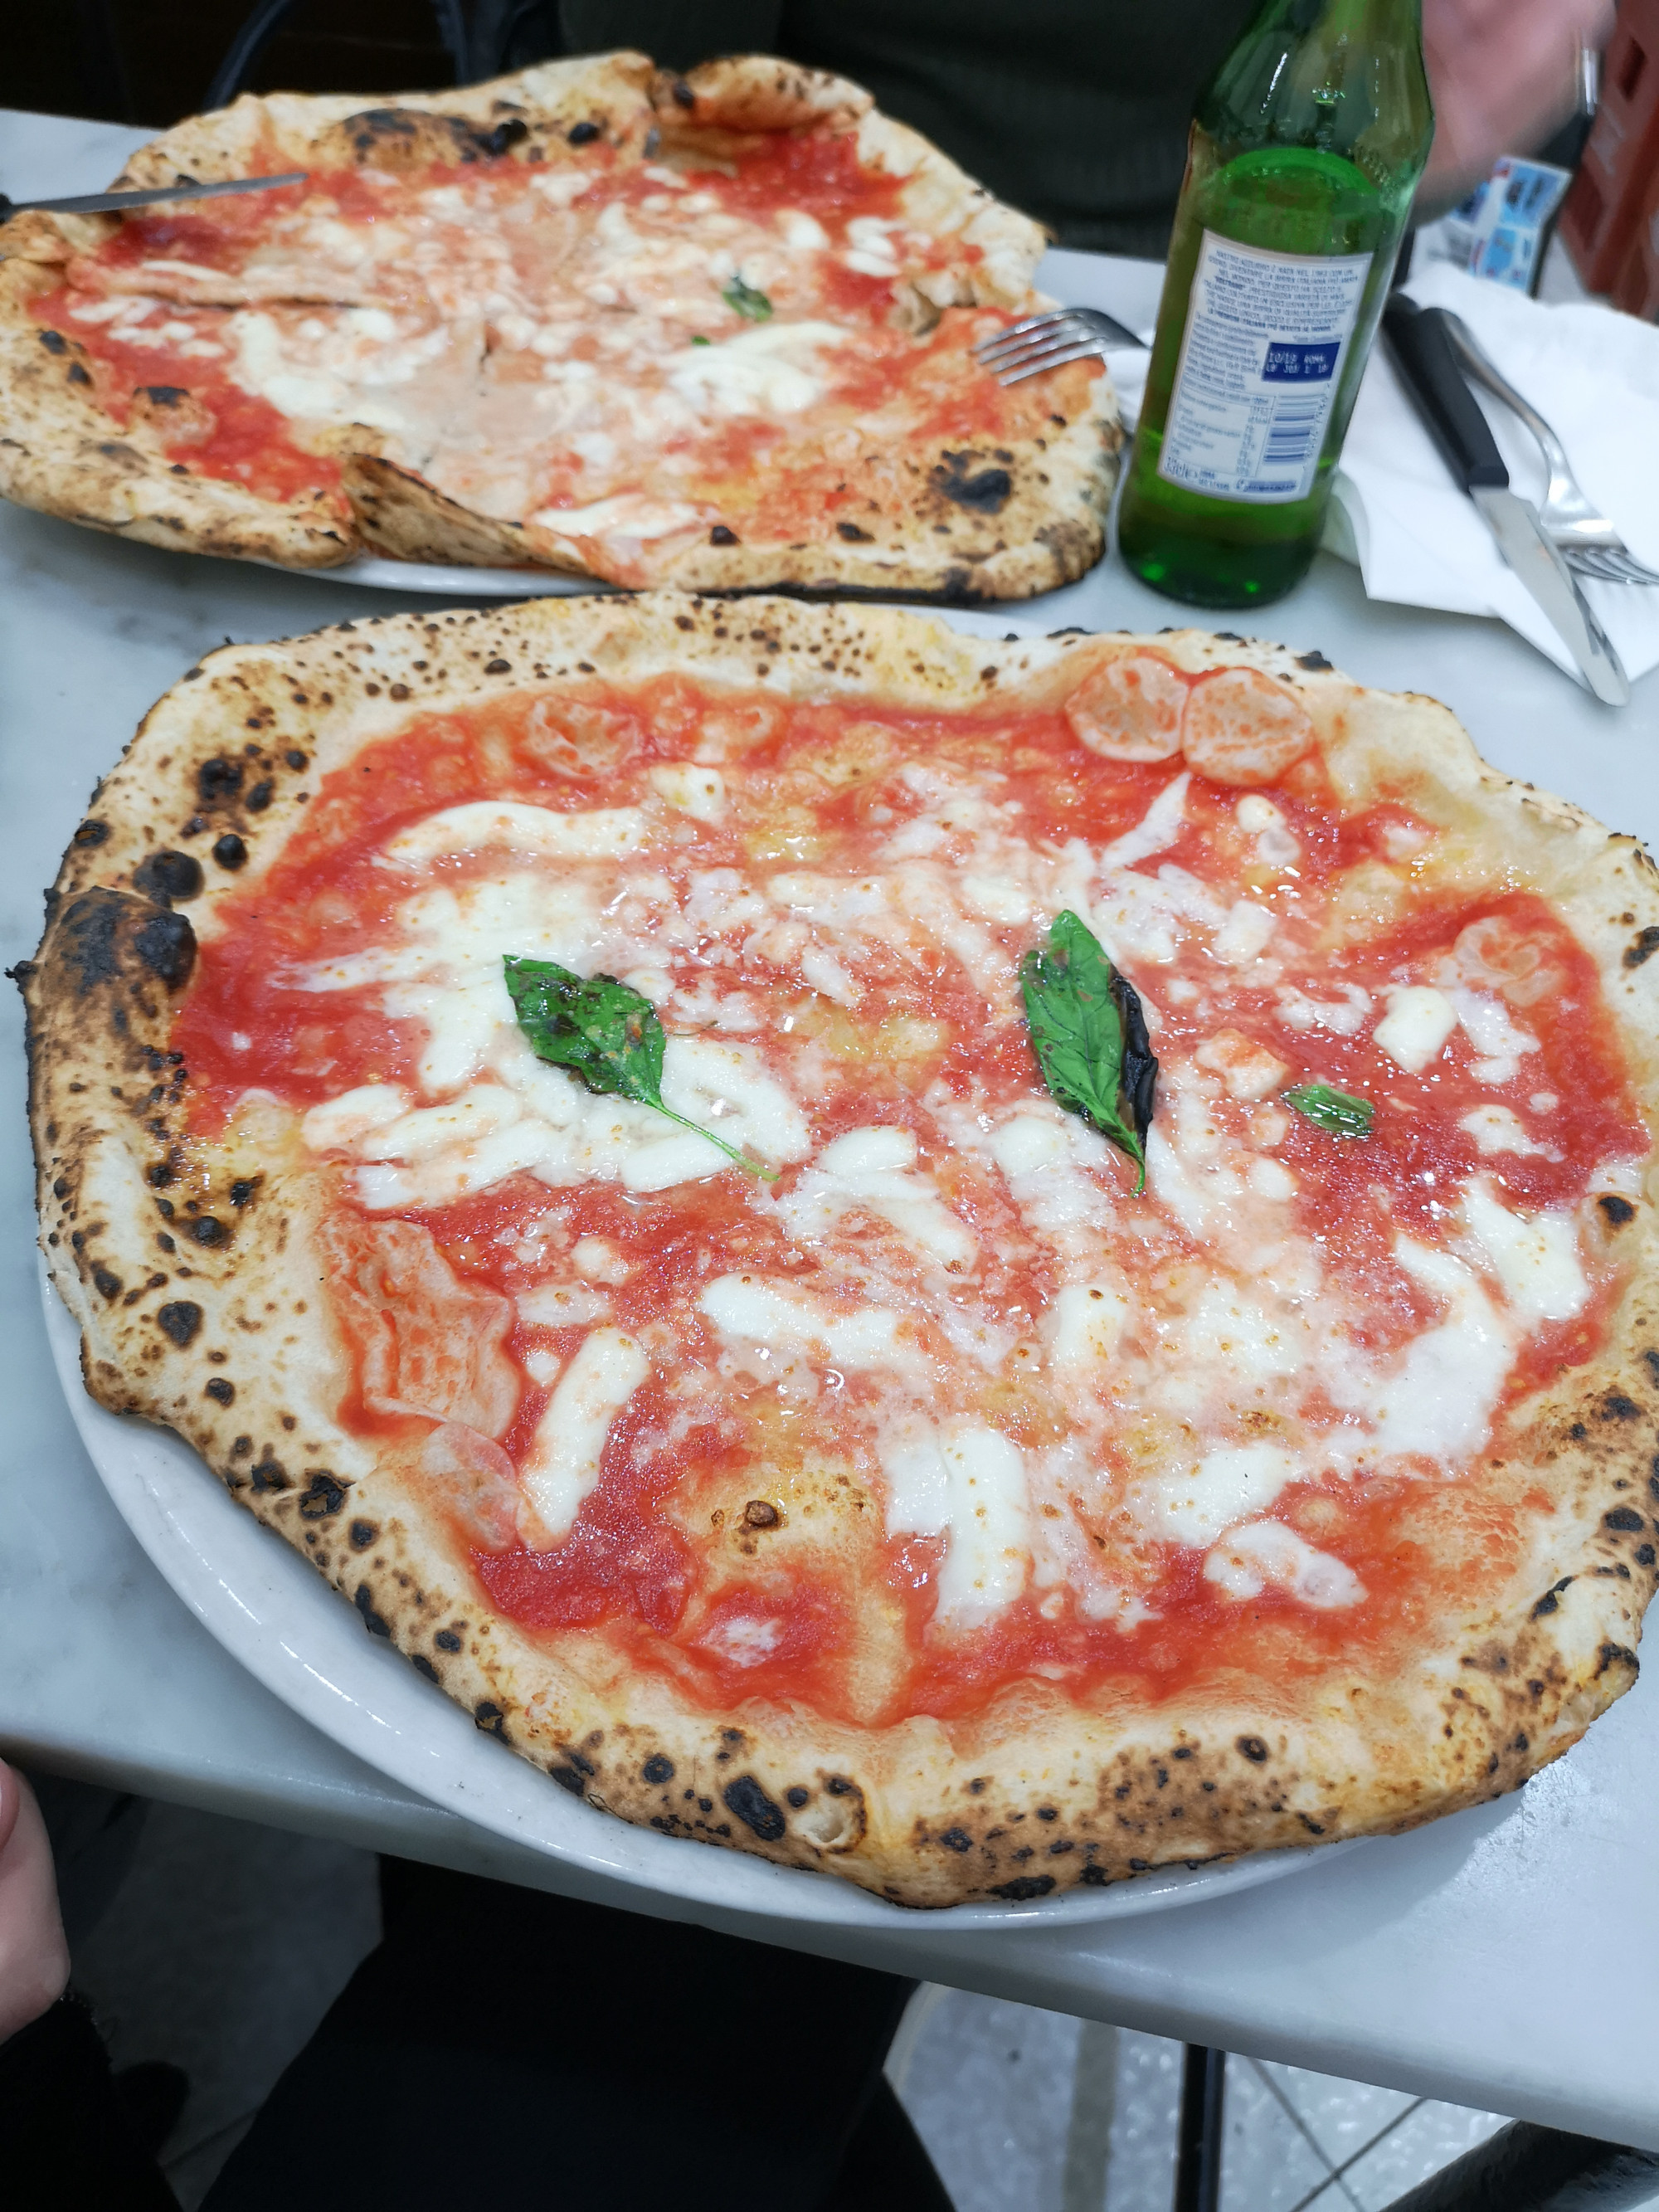 L'antica pizzeria da Michele- Eat, pray, love